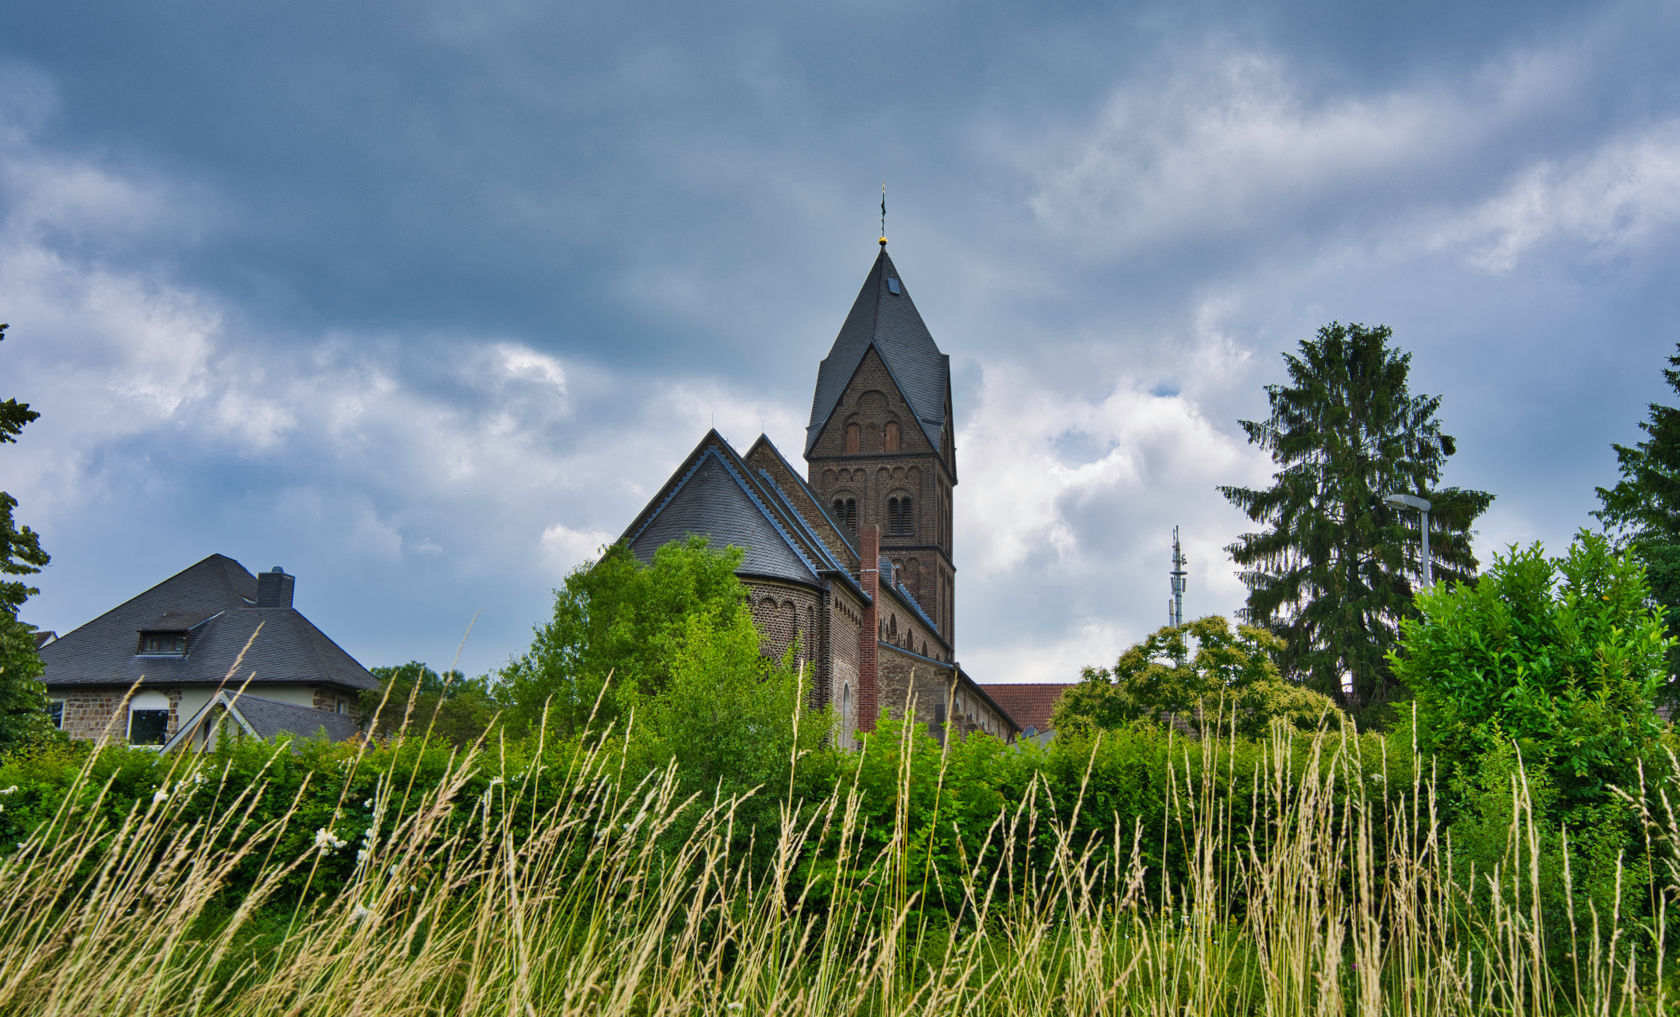 Kirche aus Backsteinen in Düsseldorf Angermund